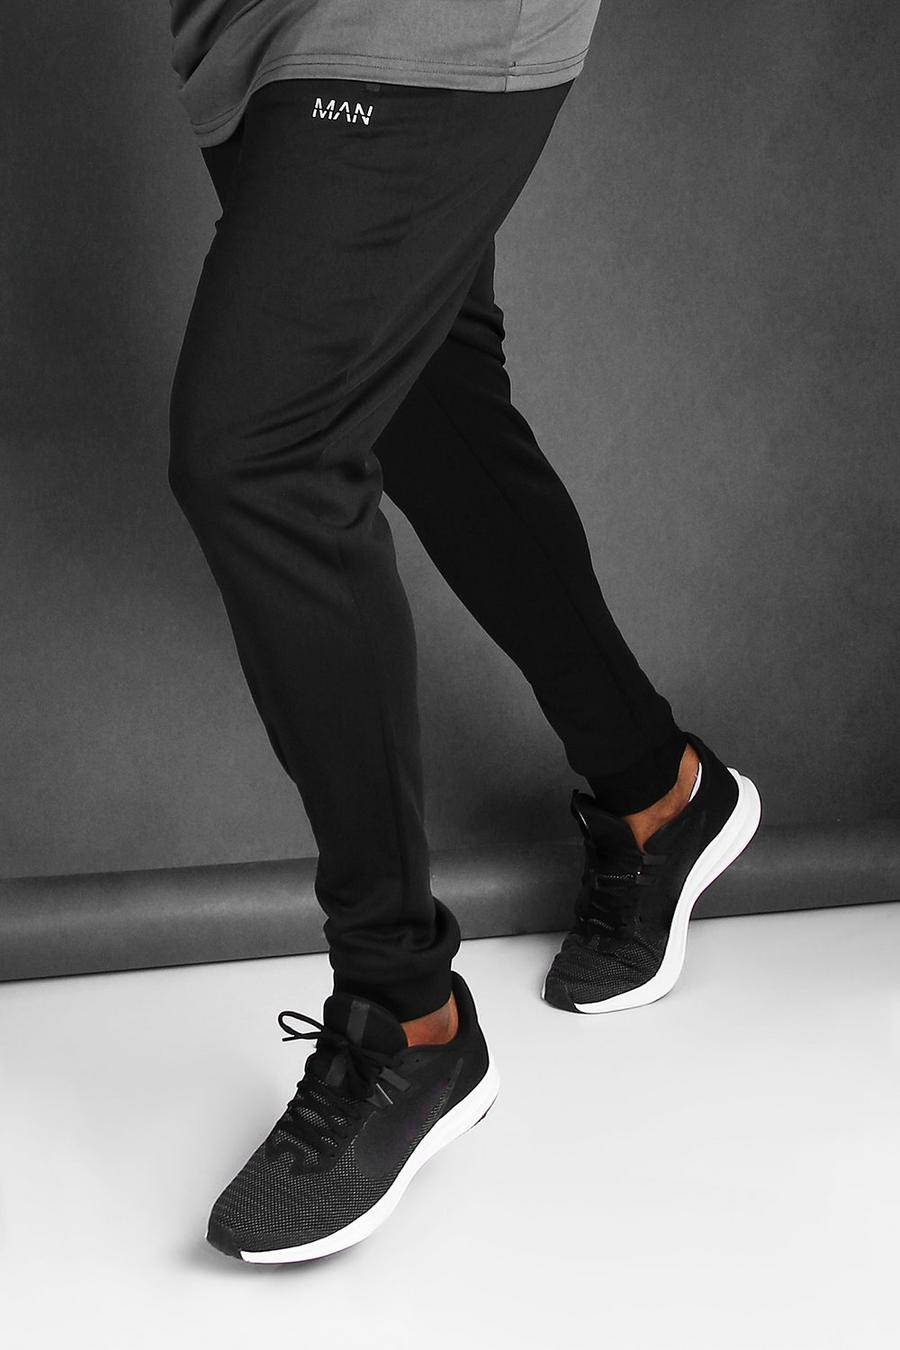 שחור מכנסי ריצה סקיני לאימונים עם כיתוב MAN לגברים גדולים וגבוהים image number 1